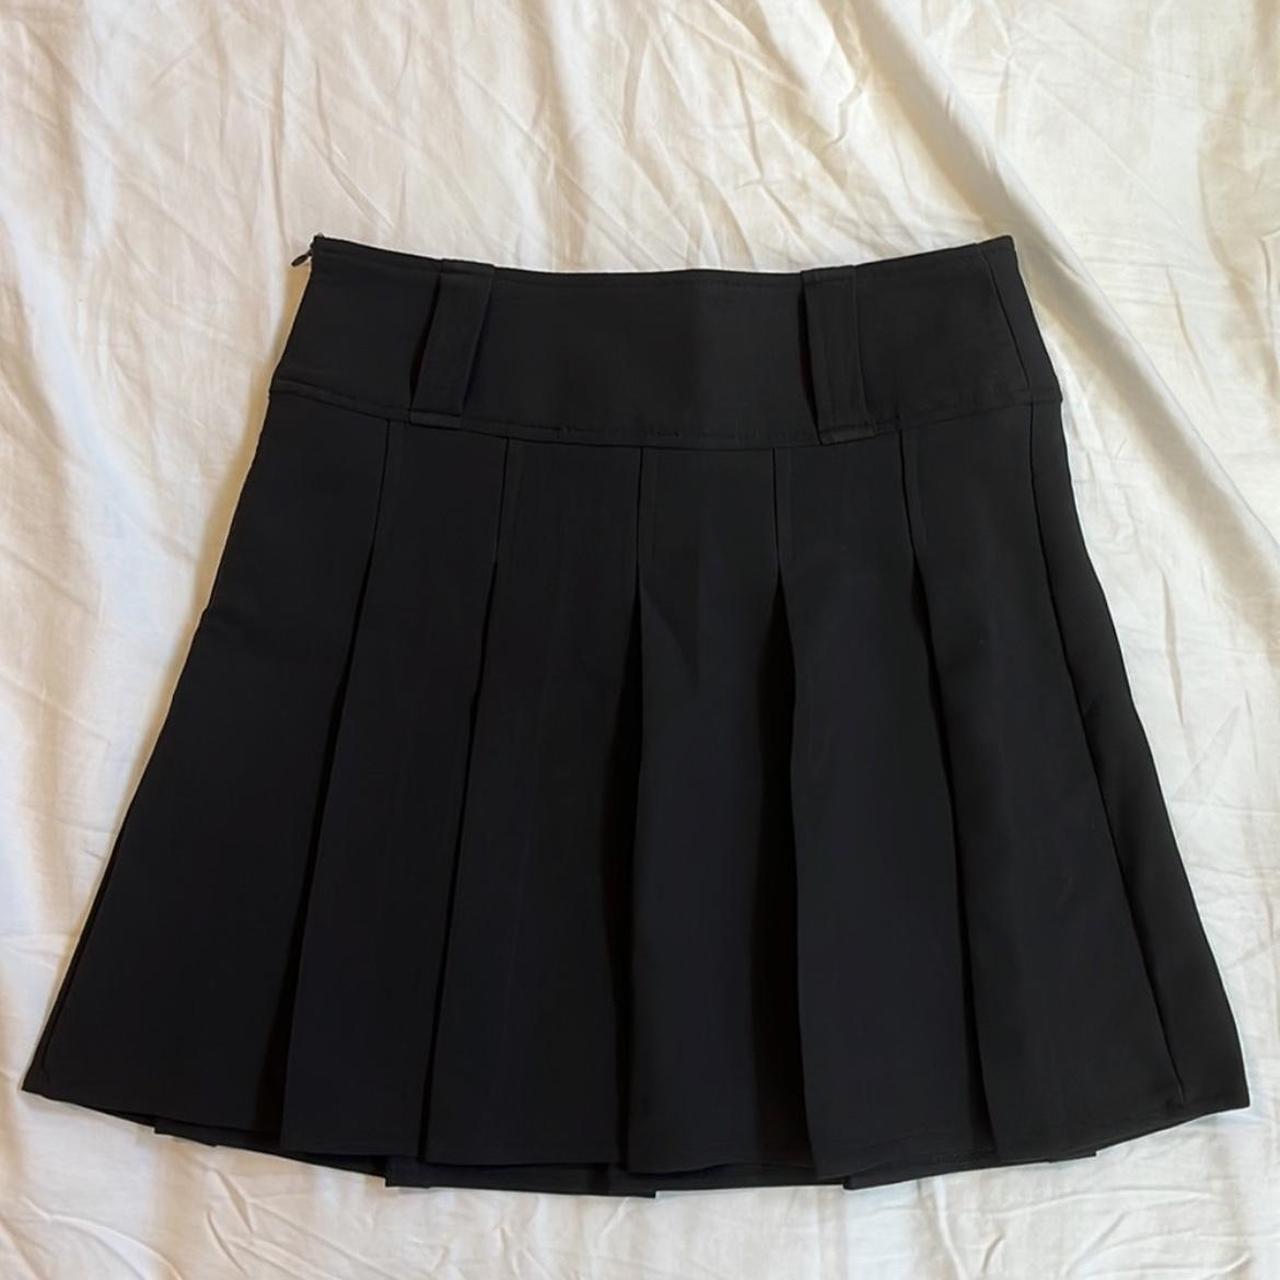 SHEIN black tennis skirt with belt loops... - Depop